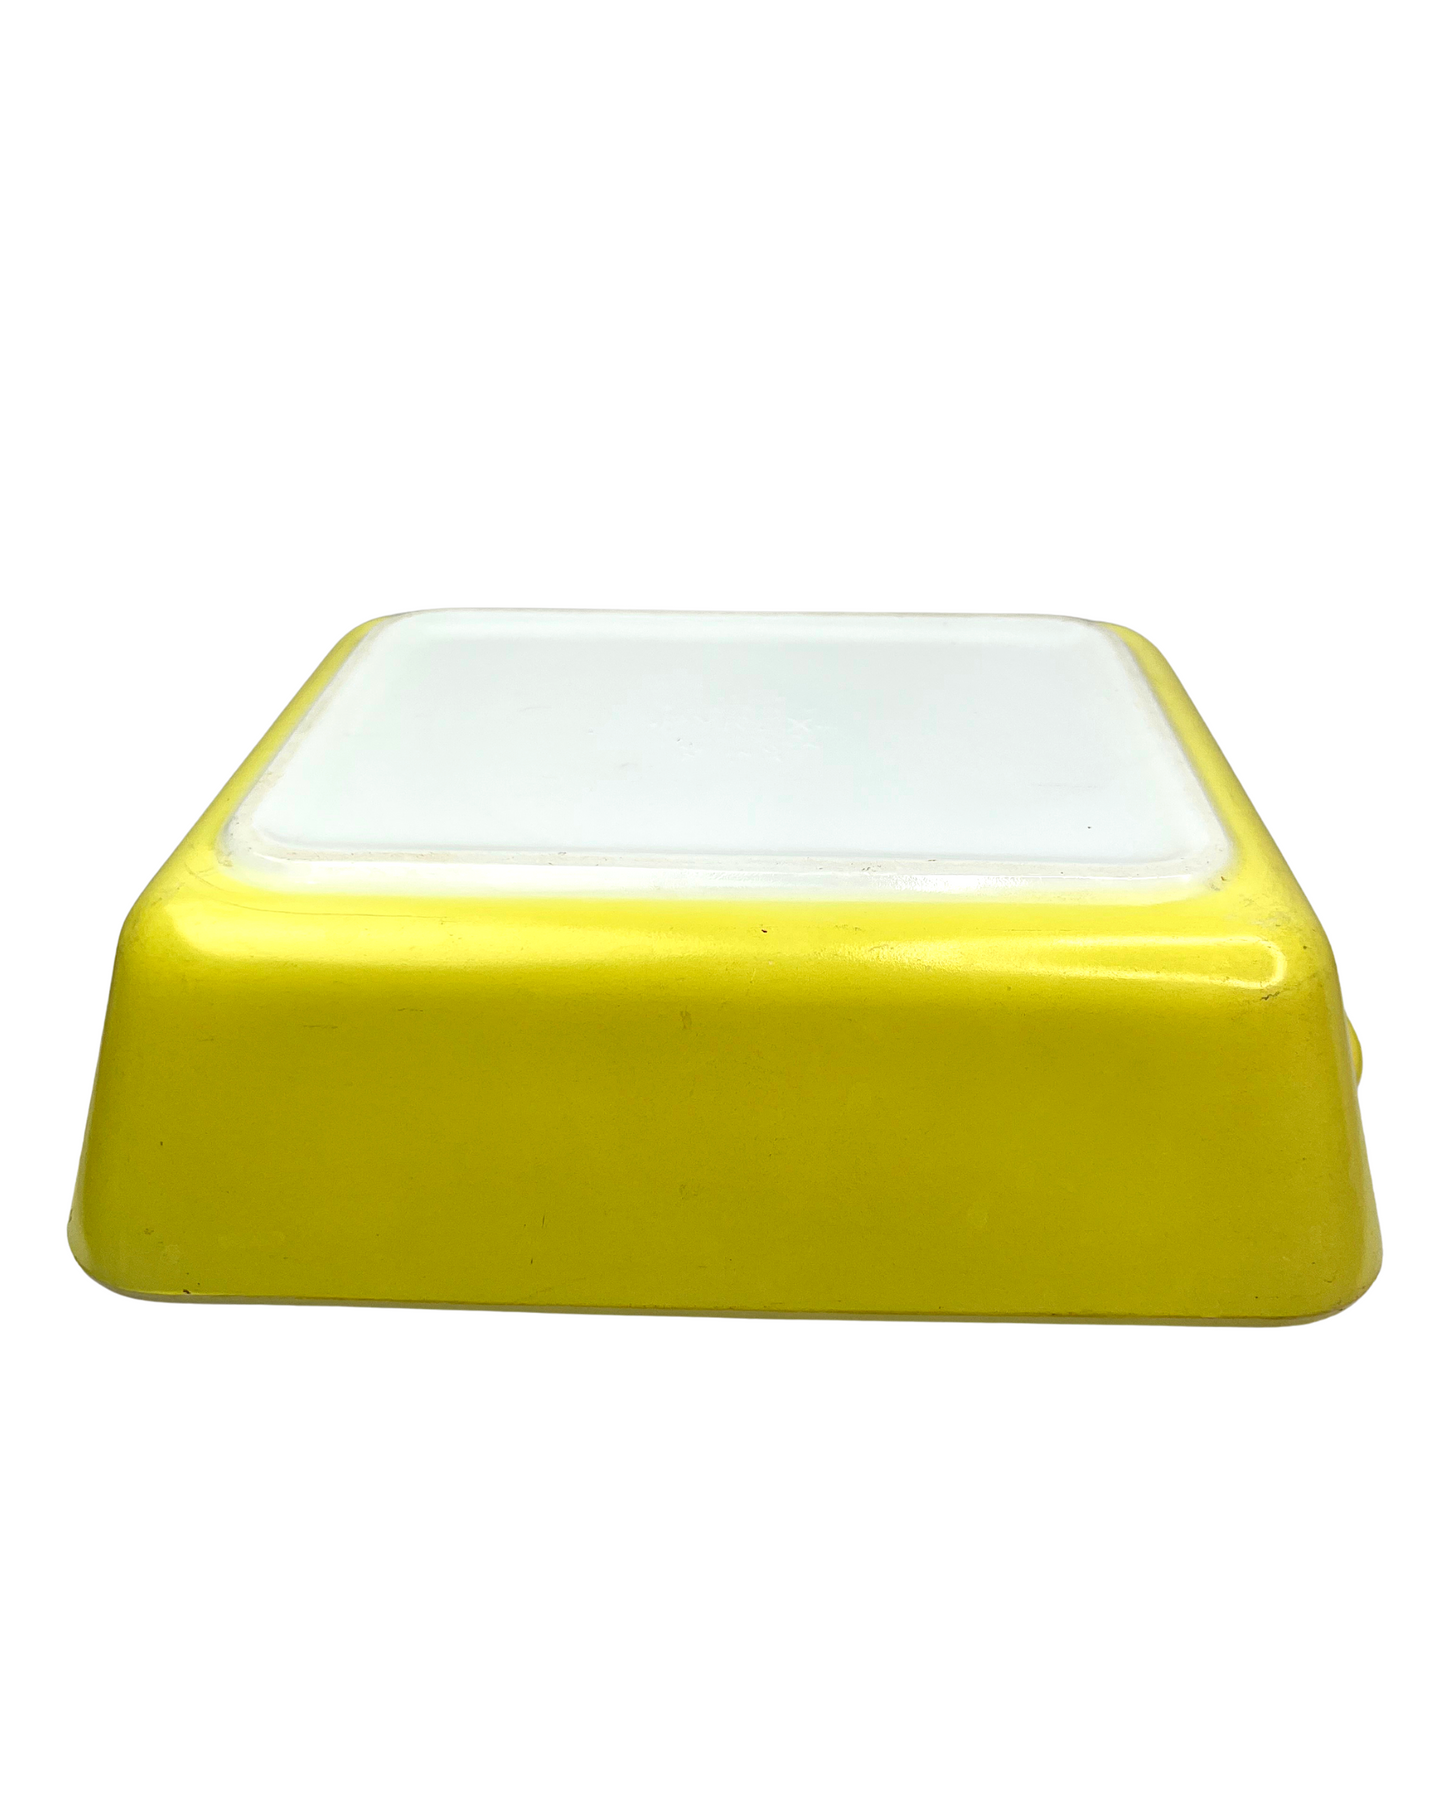 Vintage 50’s Pyrex Primary Yellow Refrigerator Dish #503 Rectangular Baking Dish 1.5 Quart